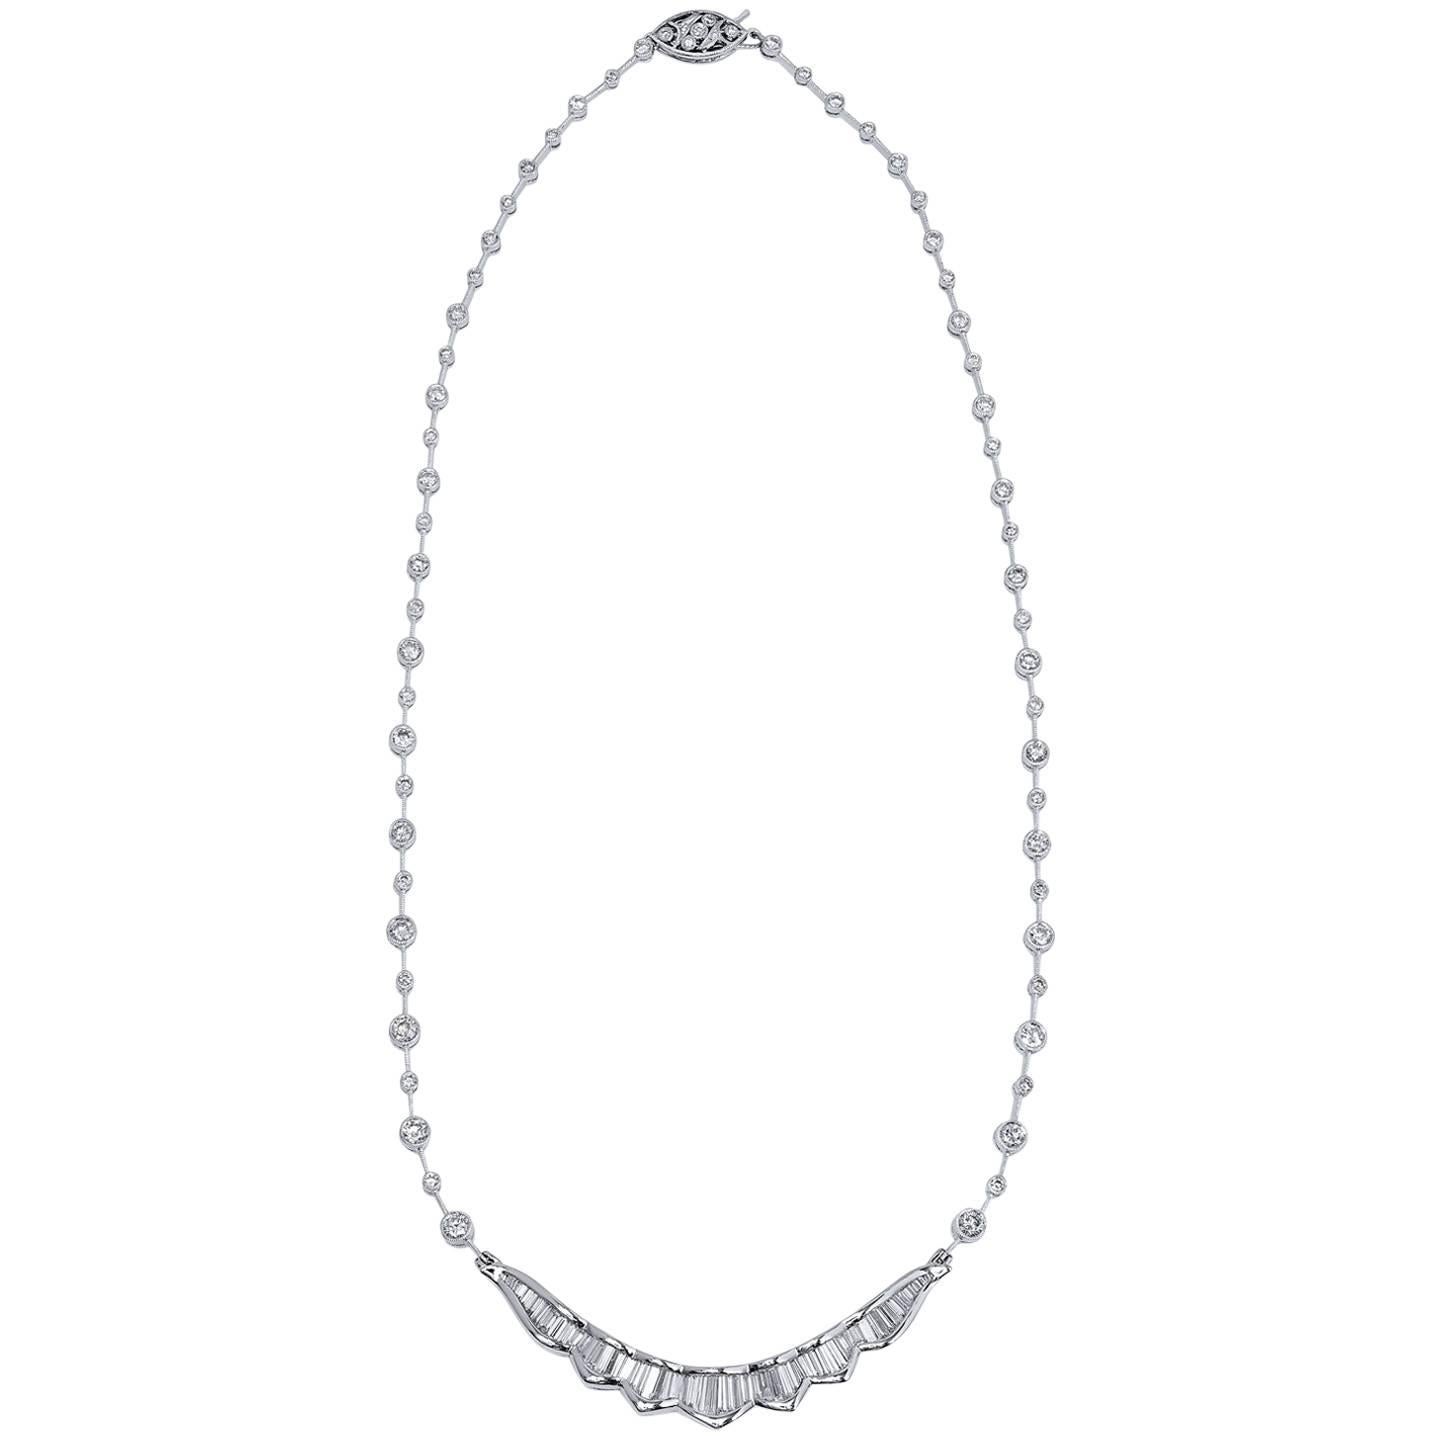 4.58 Carat Diamond Necklace